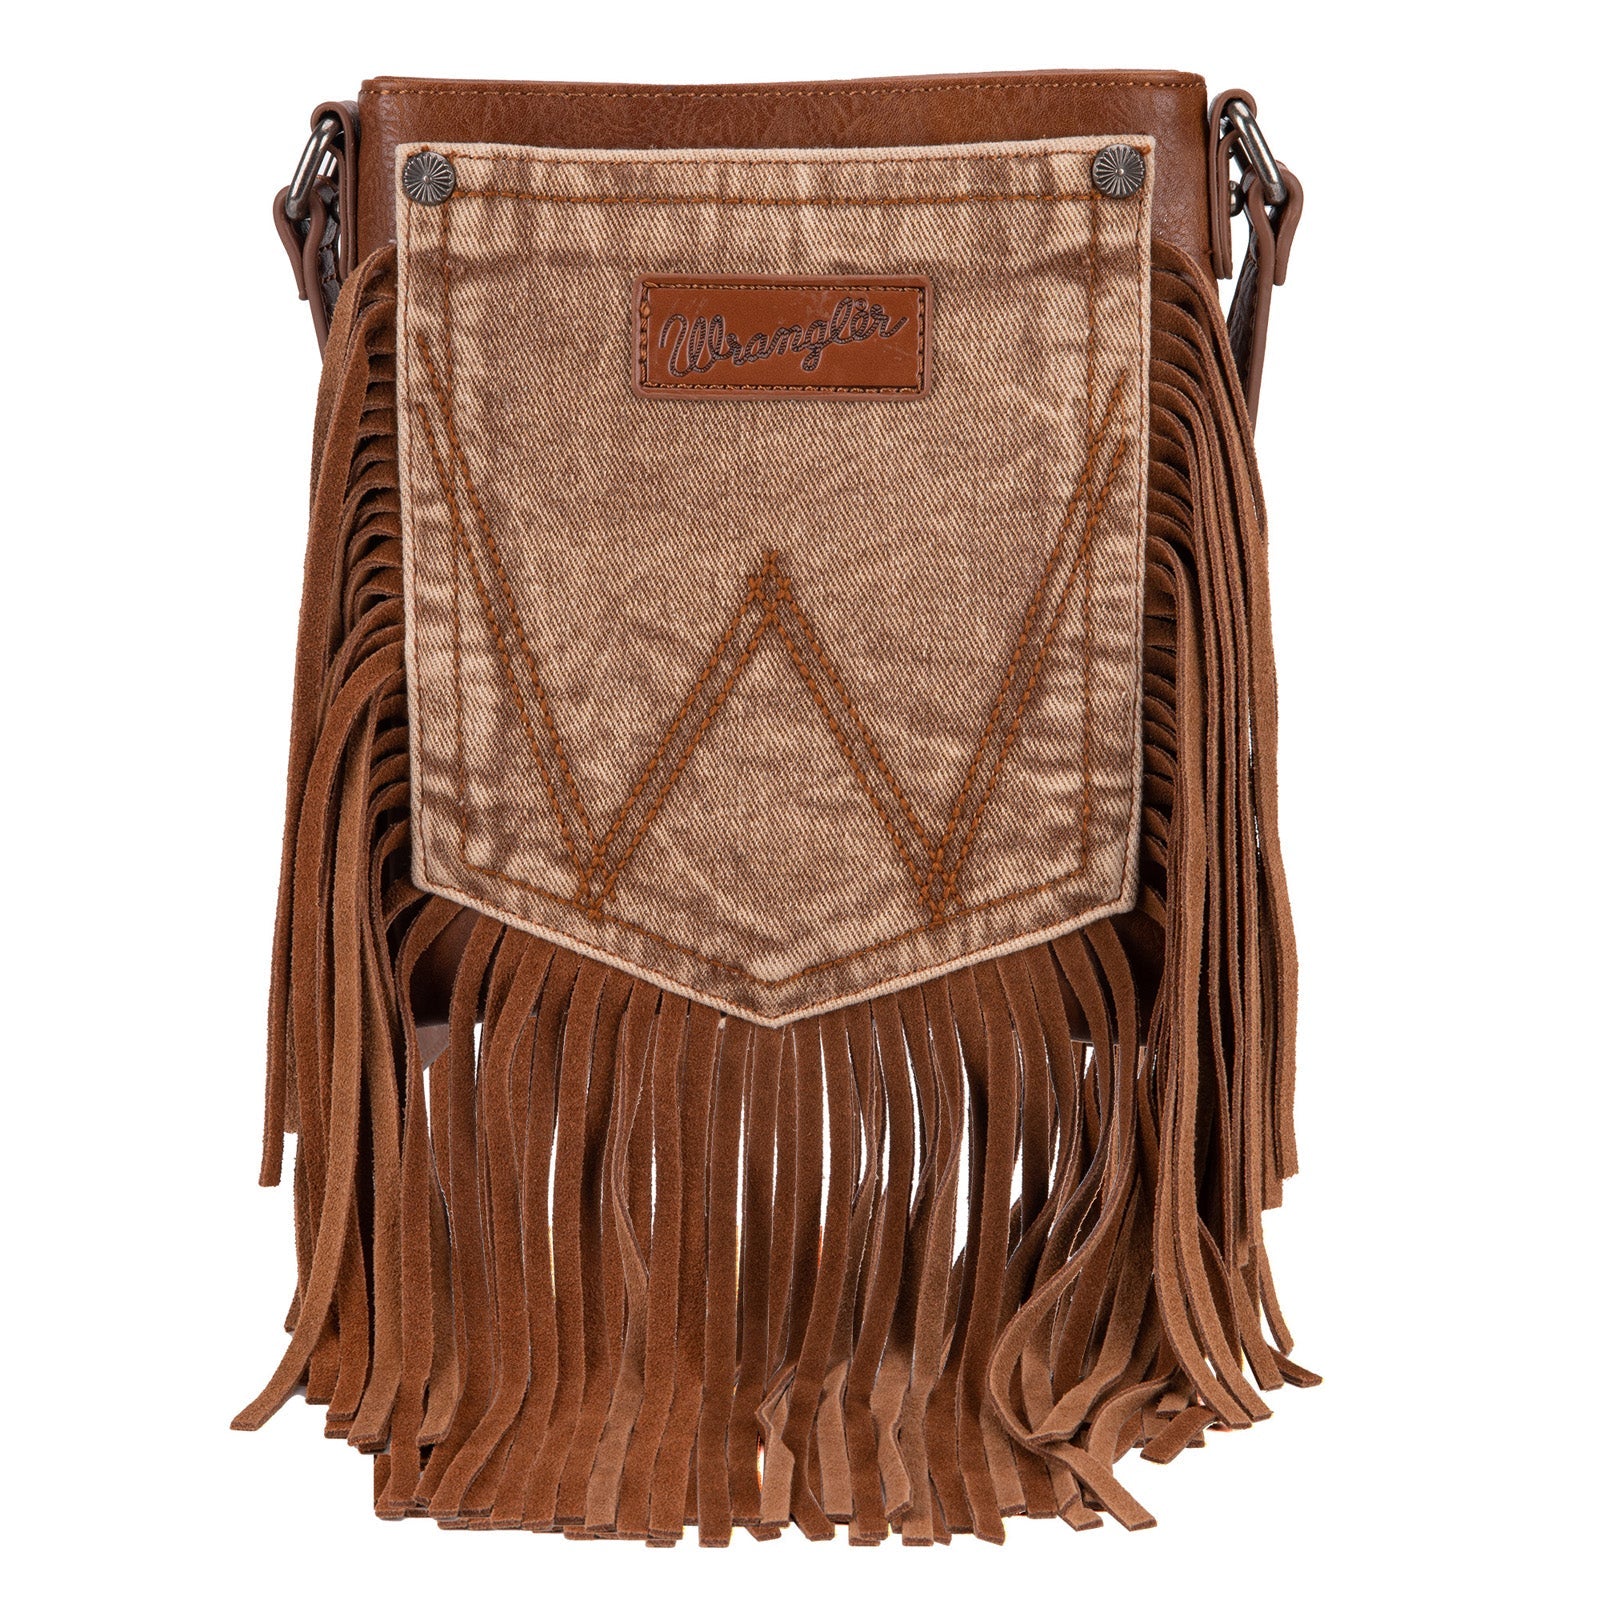 Wrangler Light Brown Leather Fringe Jean Denim Pocket Crossbody - Montana West World